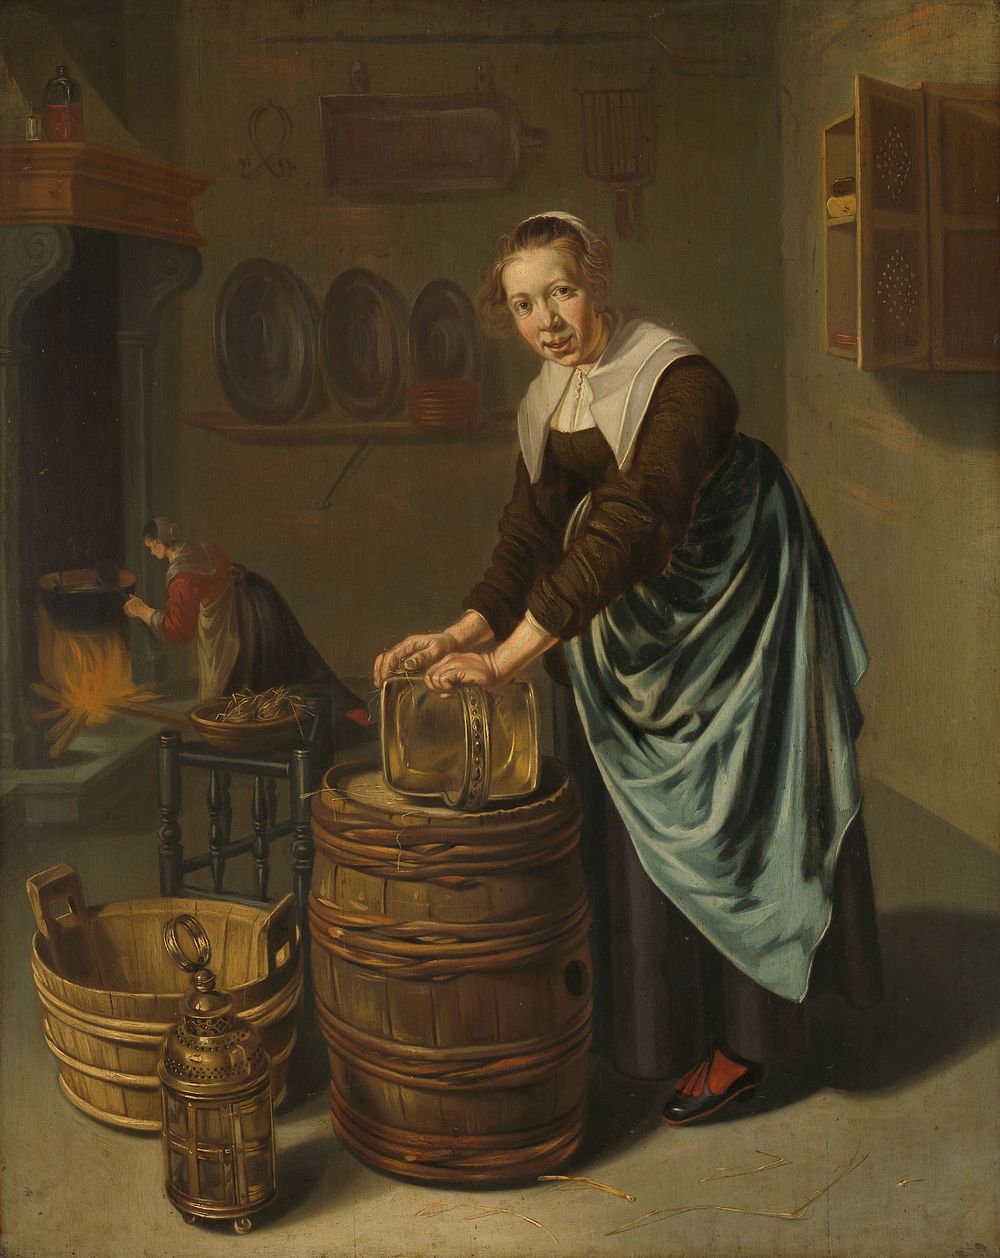 Woman scouring a vessel (1631 - 1677) by Willem van Odekercken